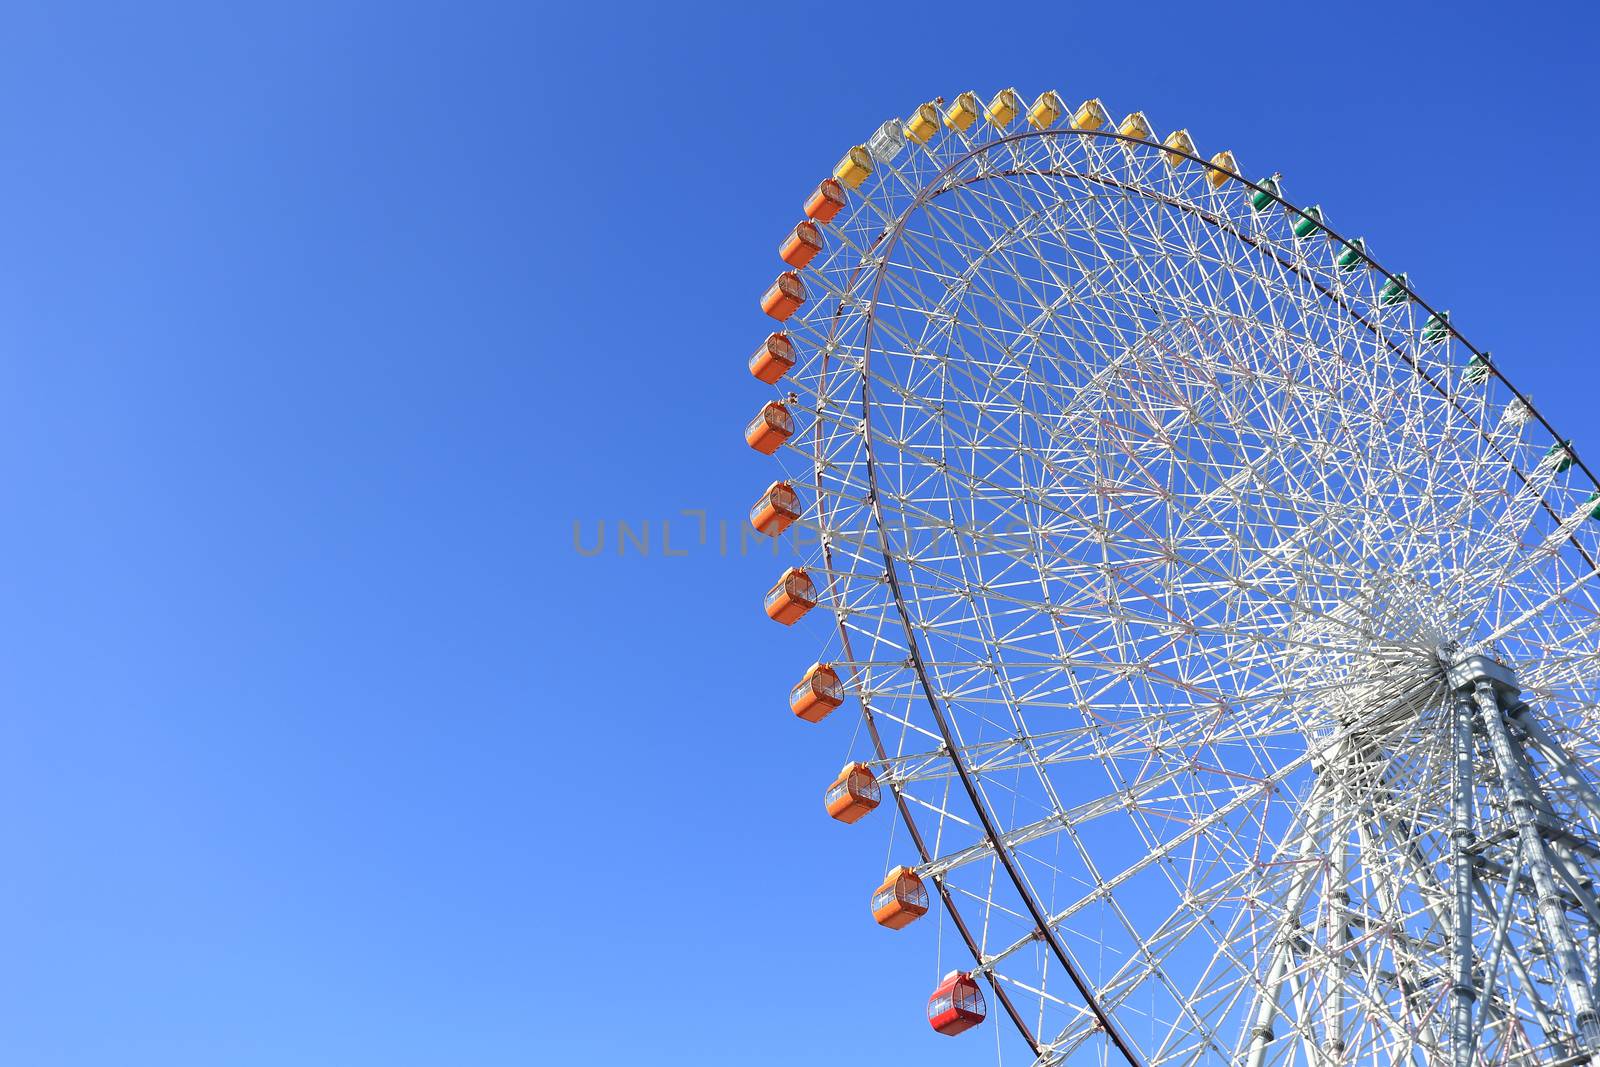 Ferris Wheel - Osaka City in Japan by rufous